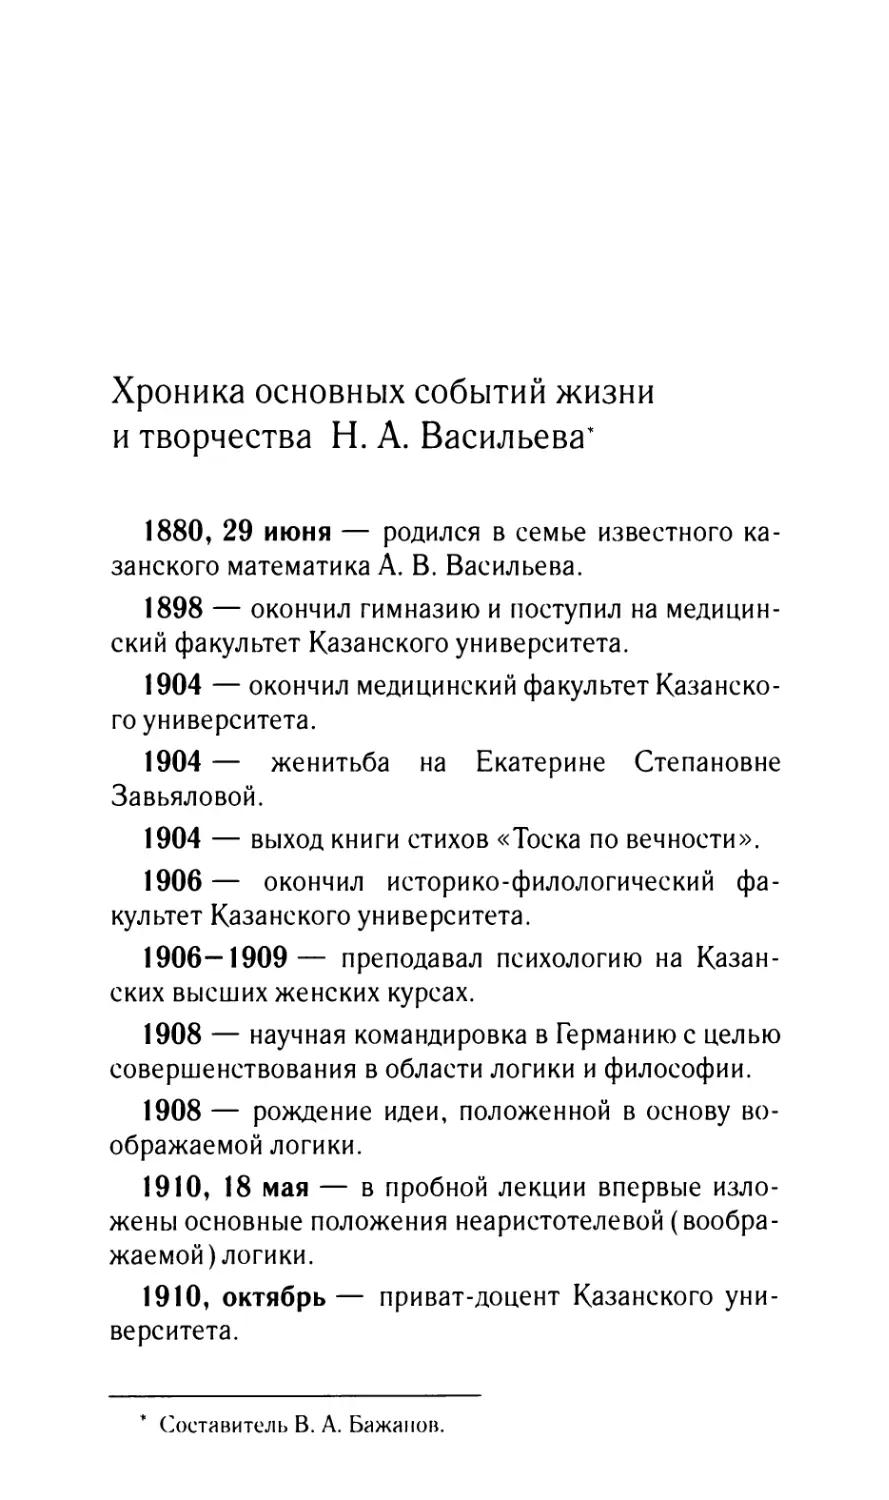 Хроника основных событий жизни и творчества H.A. Васильева